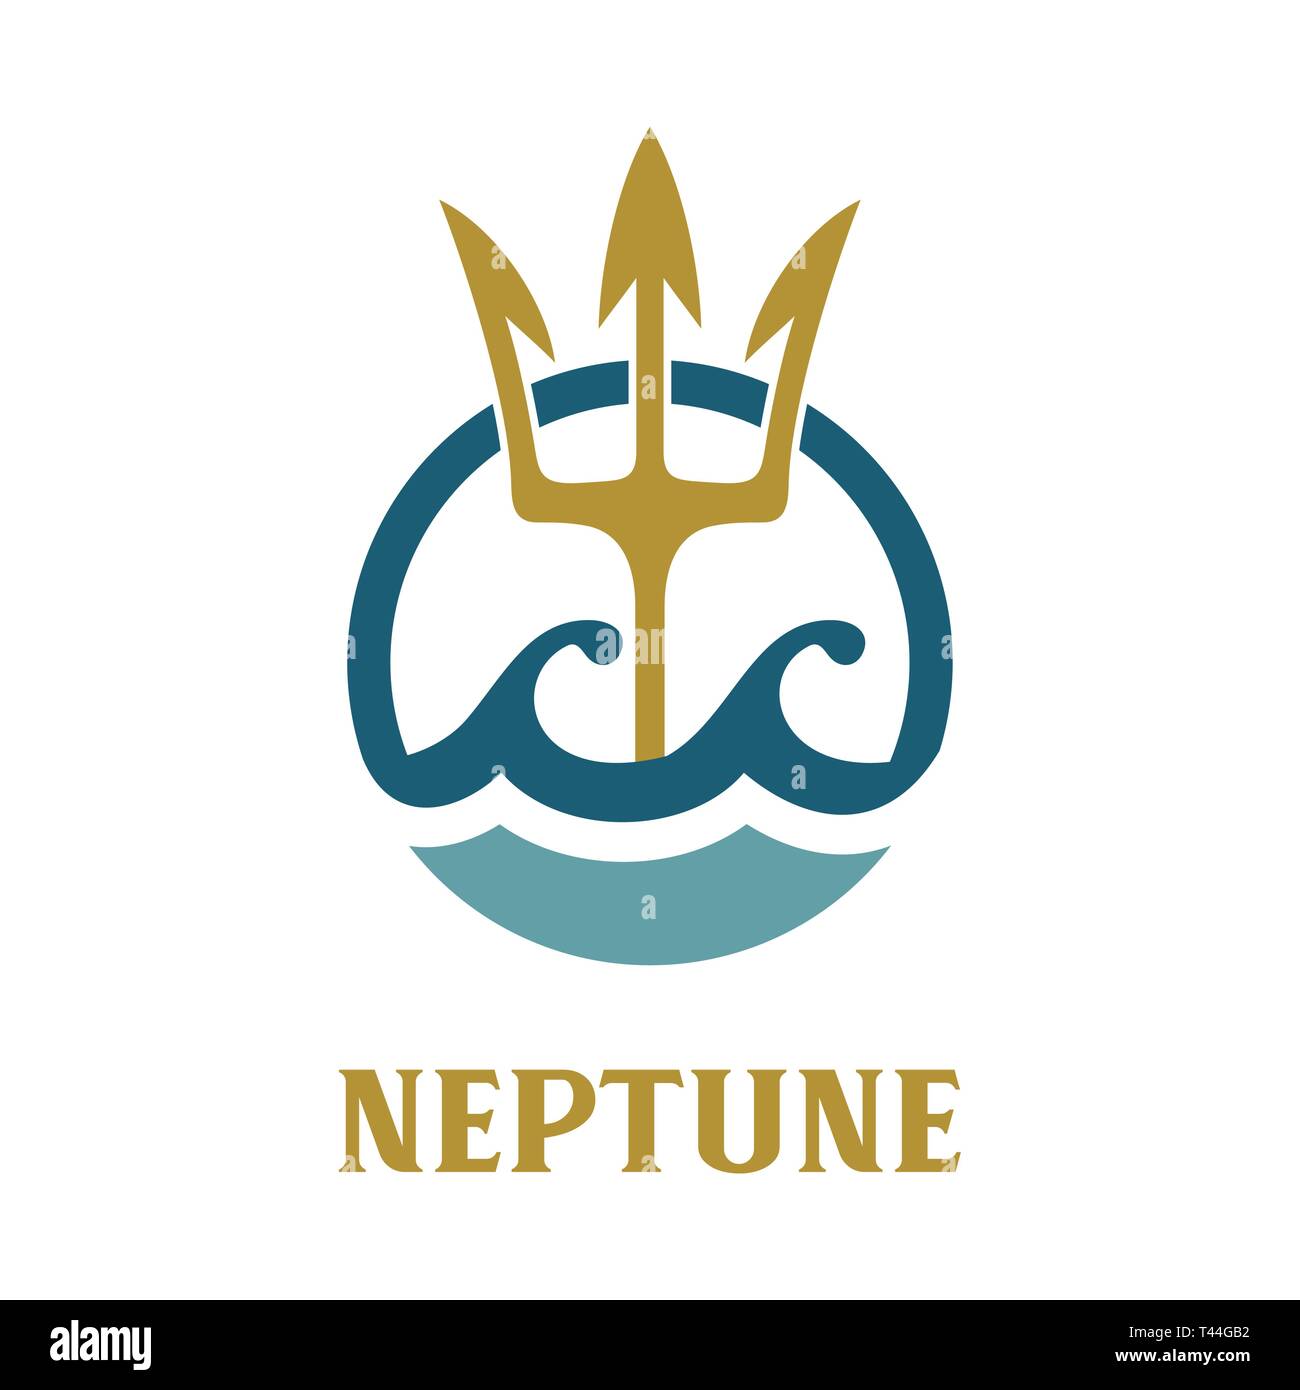 Vector image of Neptune's Trident. Neptune template logo design. Stock Vector